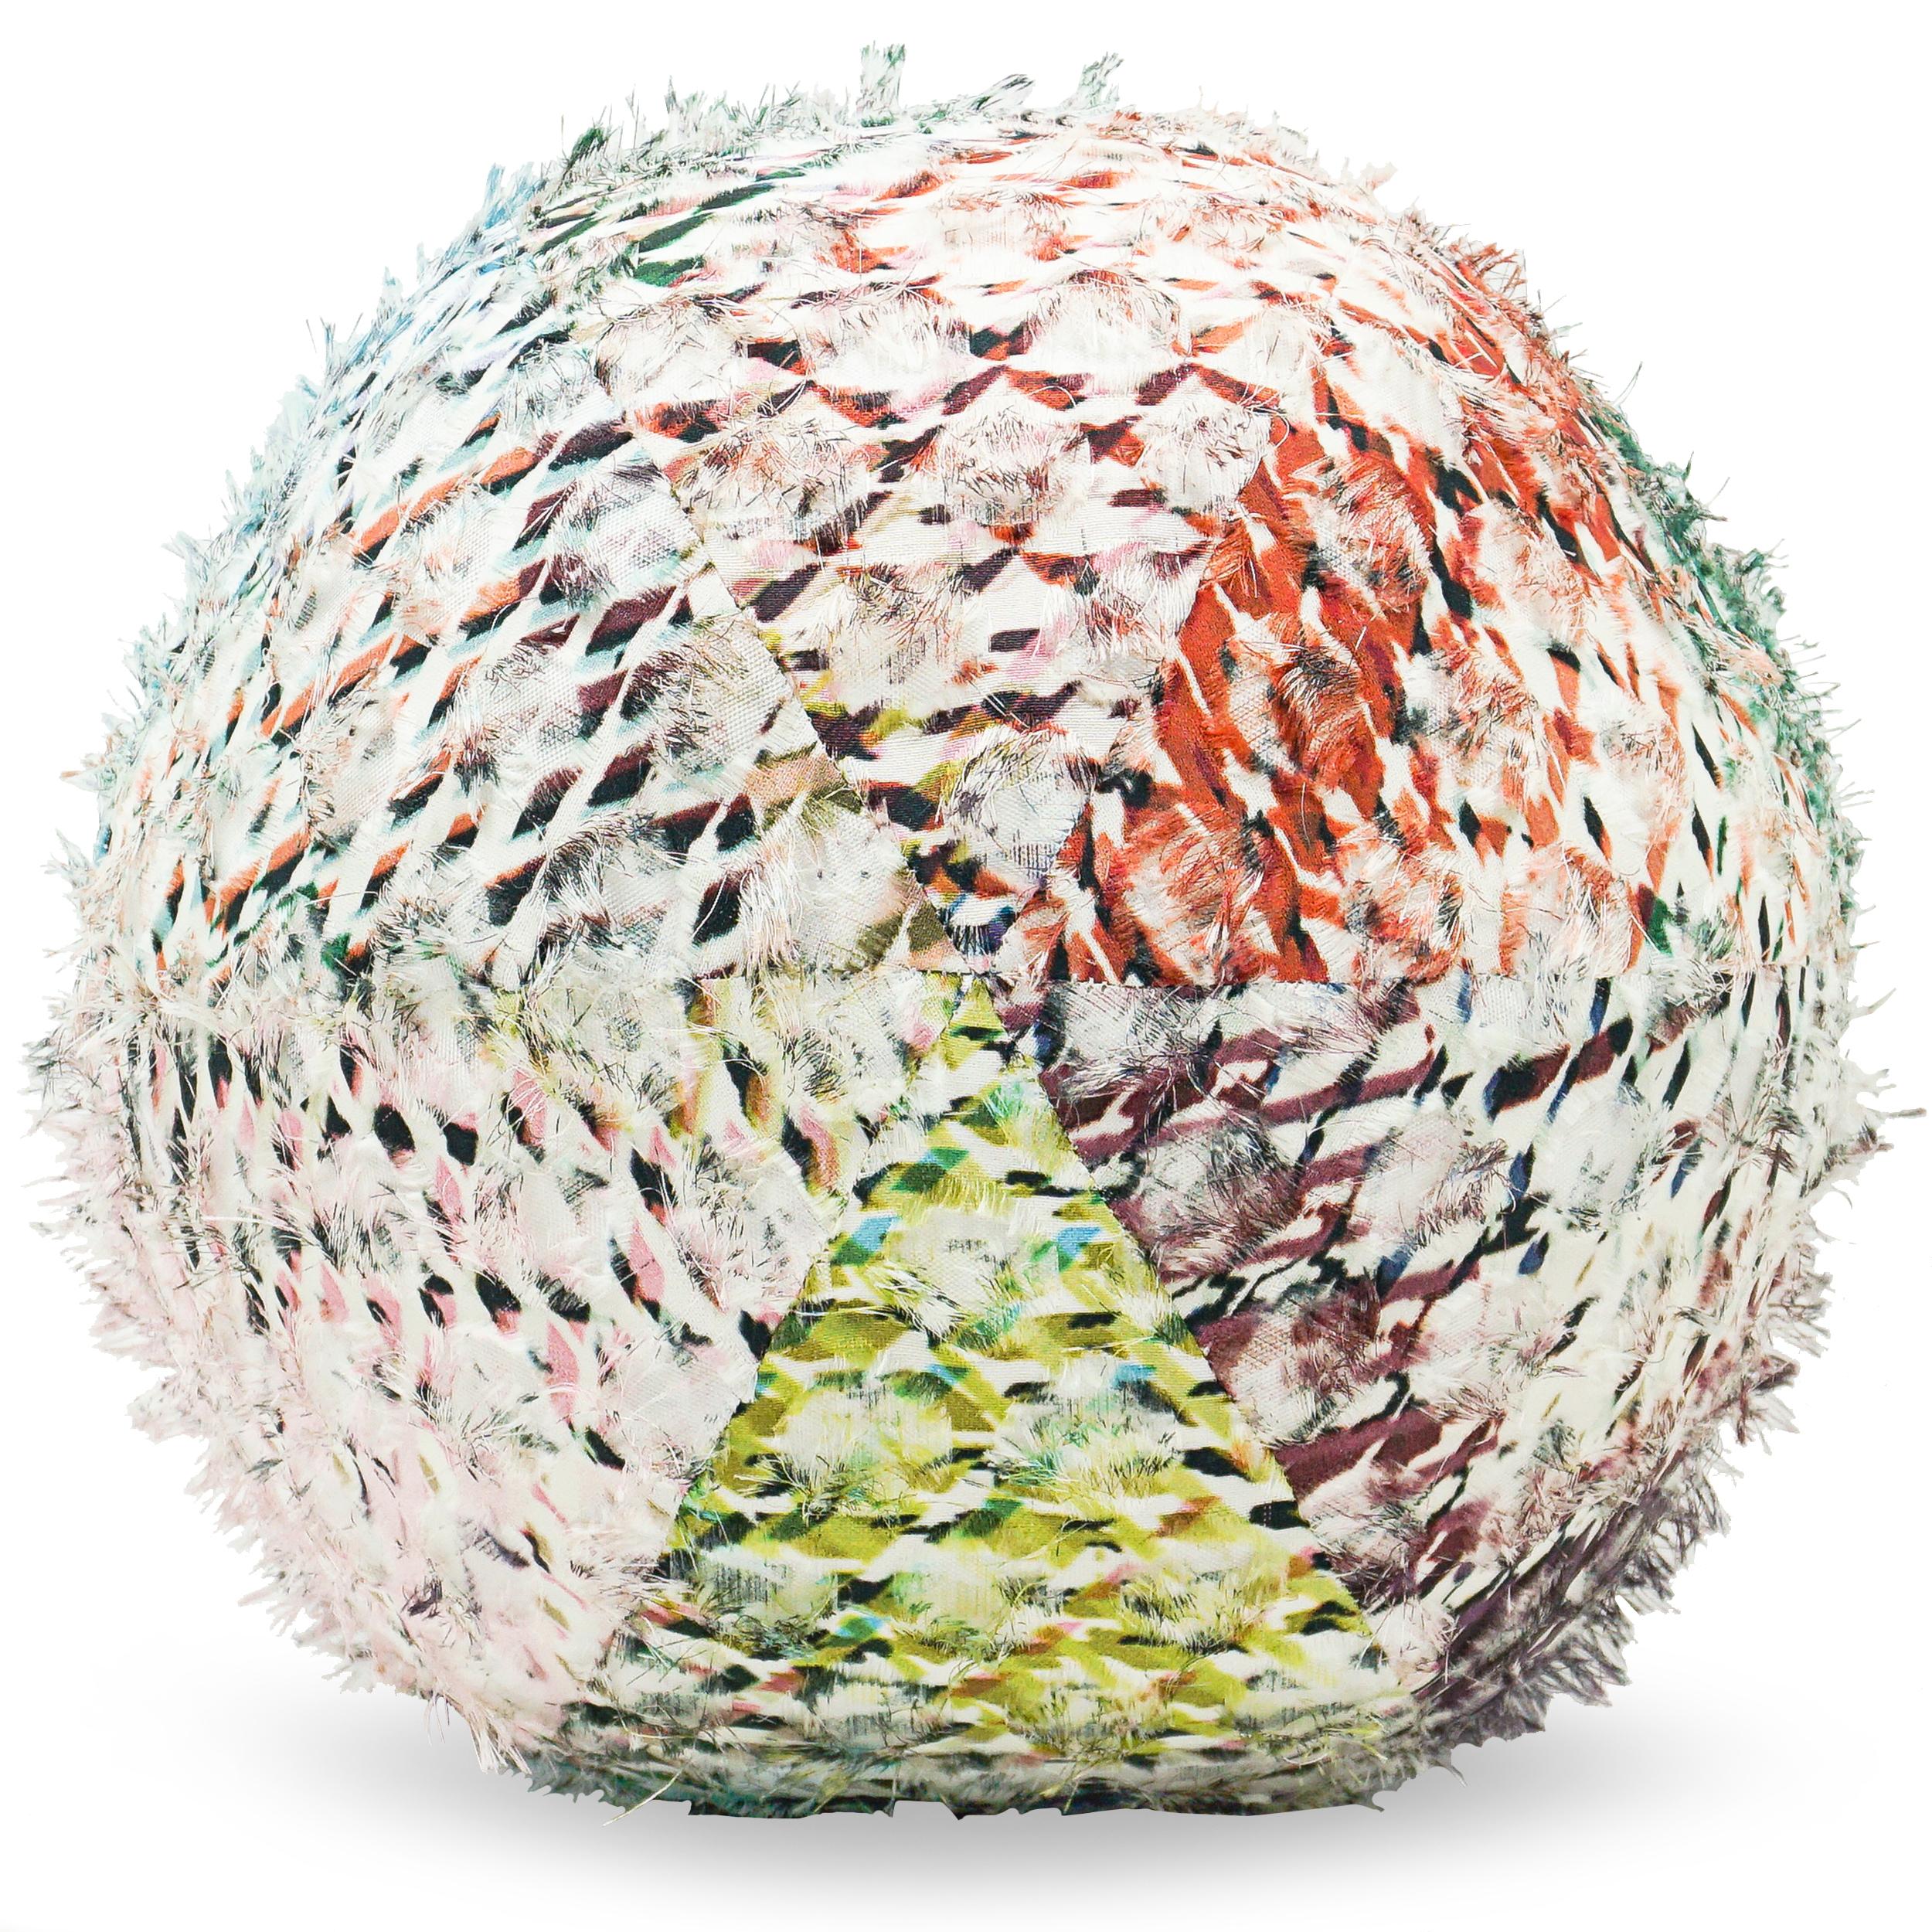 Le coussin boule est recouvert d'un tissu Romo coloré avec des franges qui lui donnent un aspect ludique, de la texture et un effet tridimensionnel. Peut être personnalisé dans n'importe quel tissu. Demandez la disponibilité actuelle de la balle